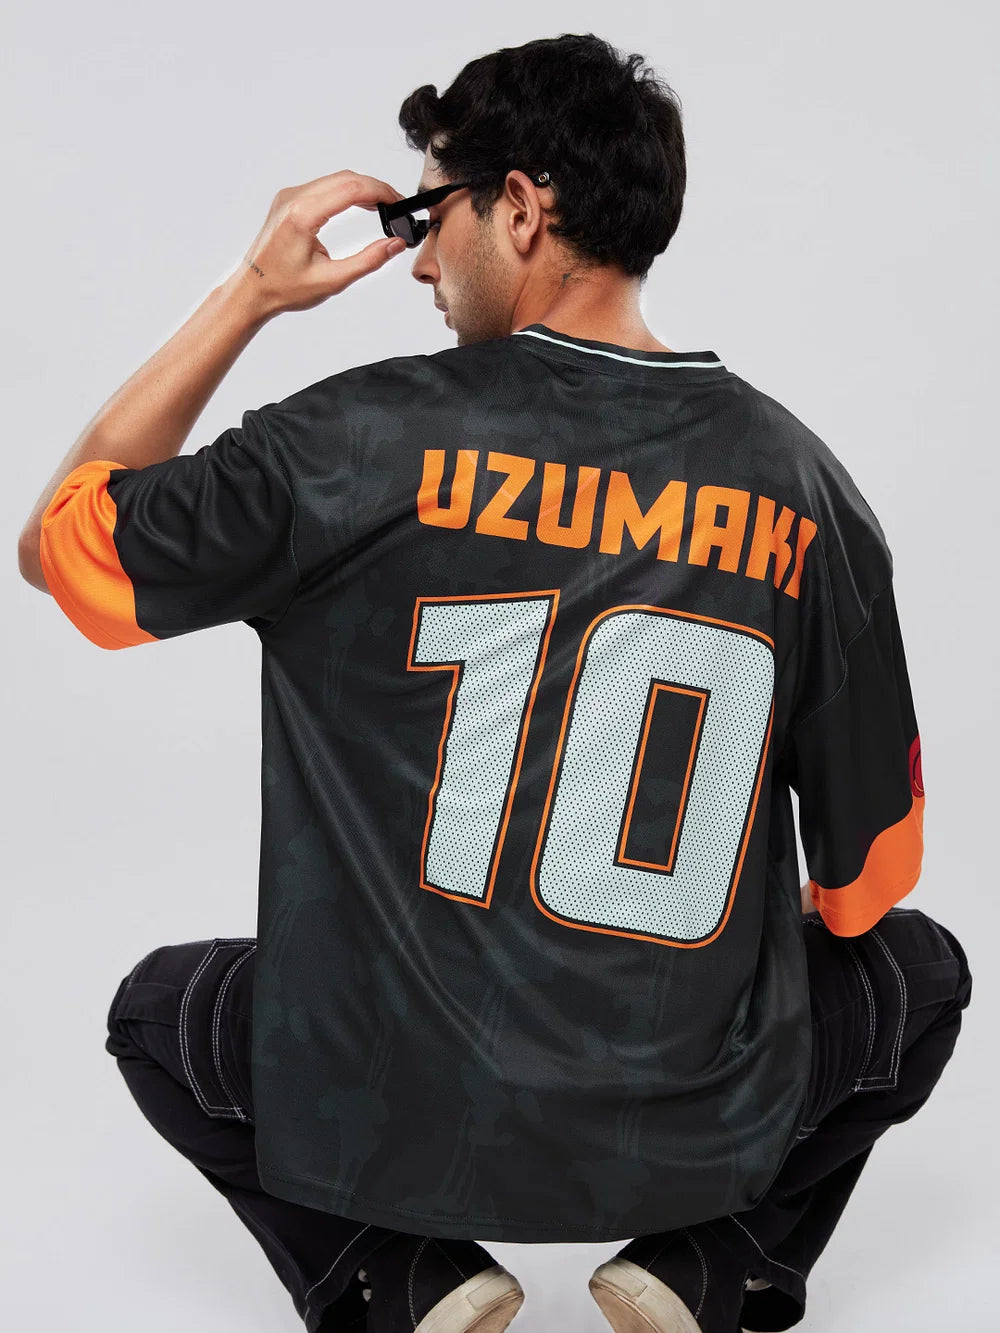 Naruto Uzumaki 10 (UK version)